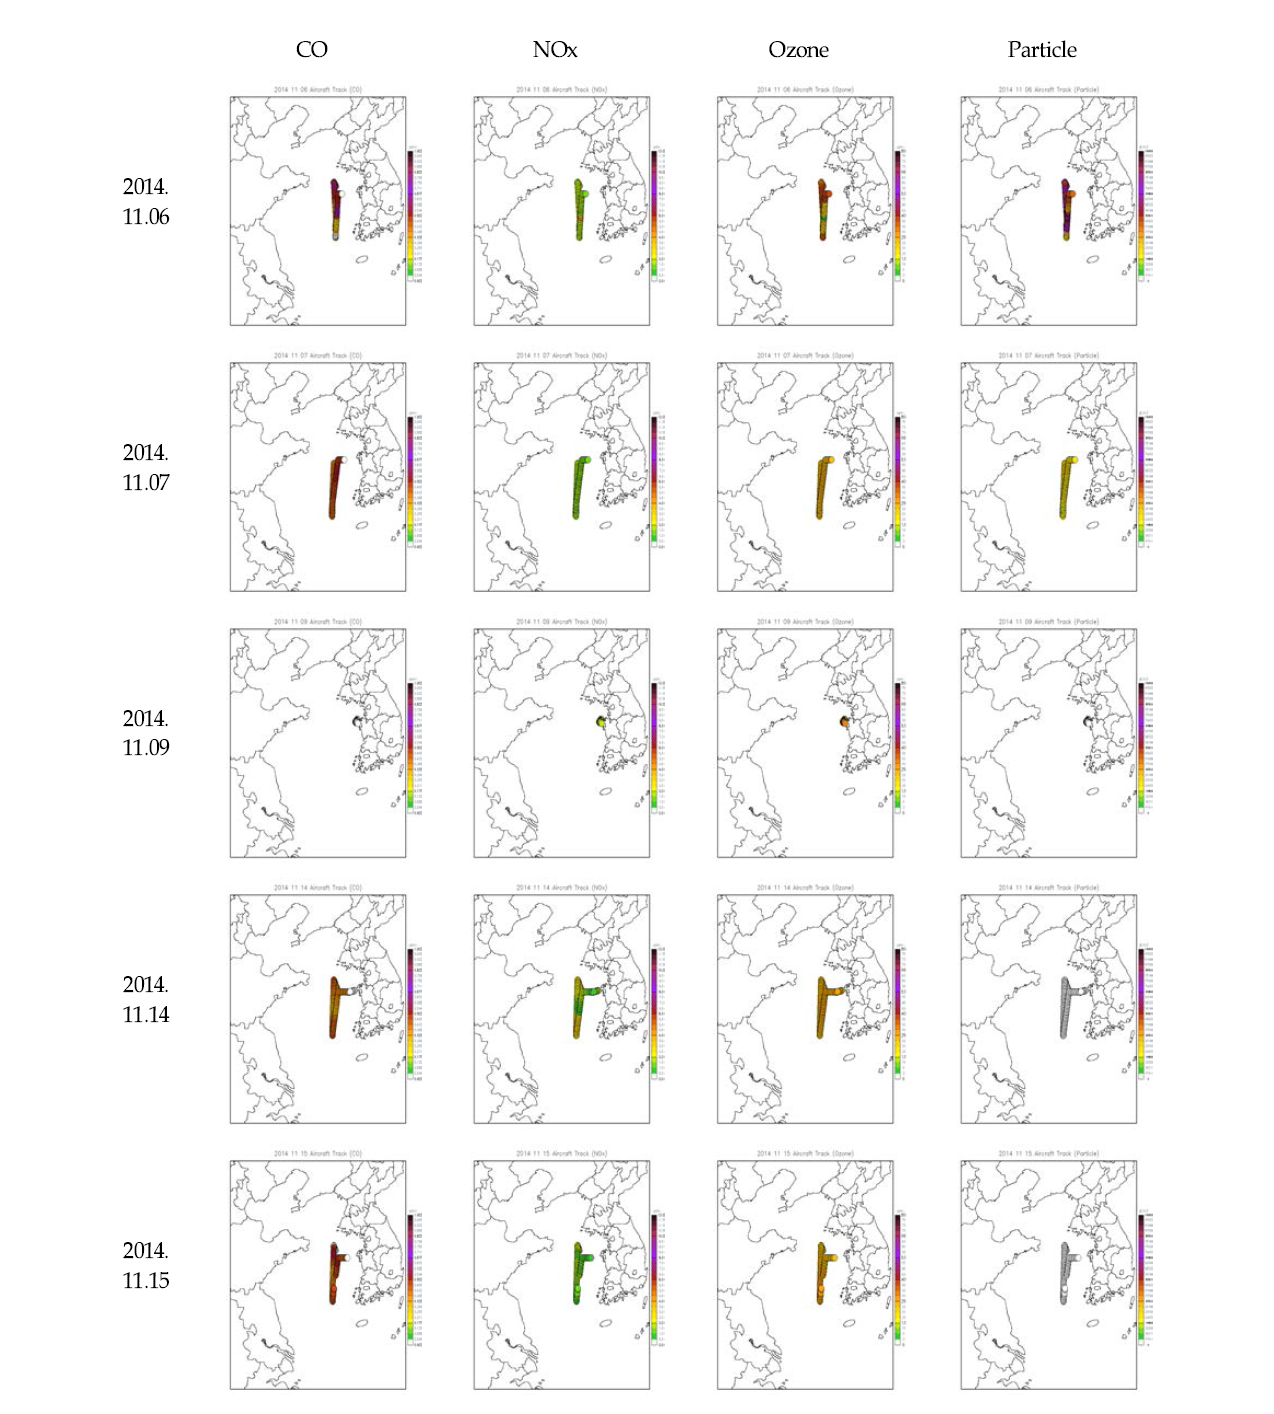 2014년 비행 경로별 CO, NOx, Ozone, Particle의 농도 분포